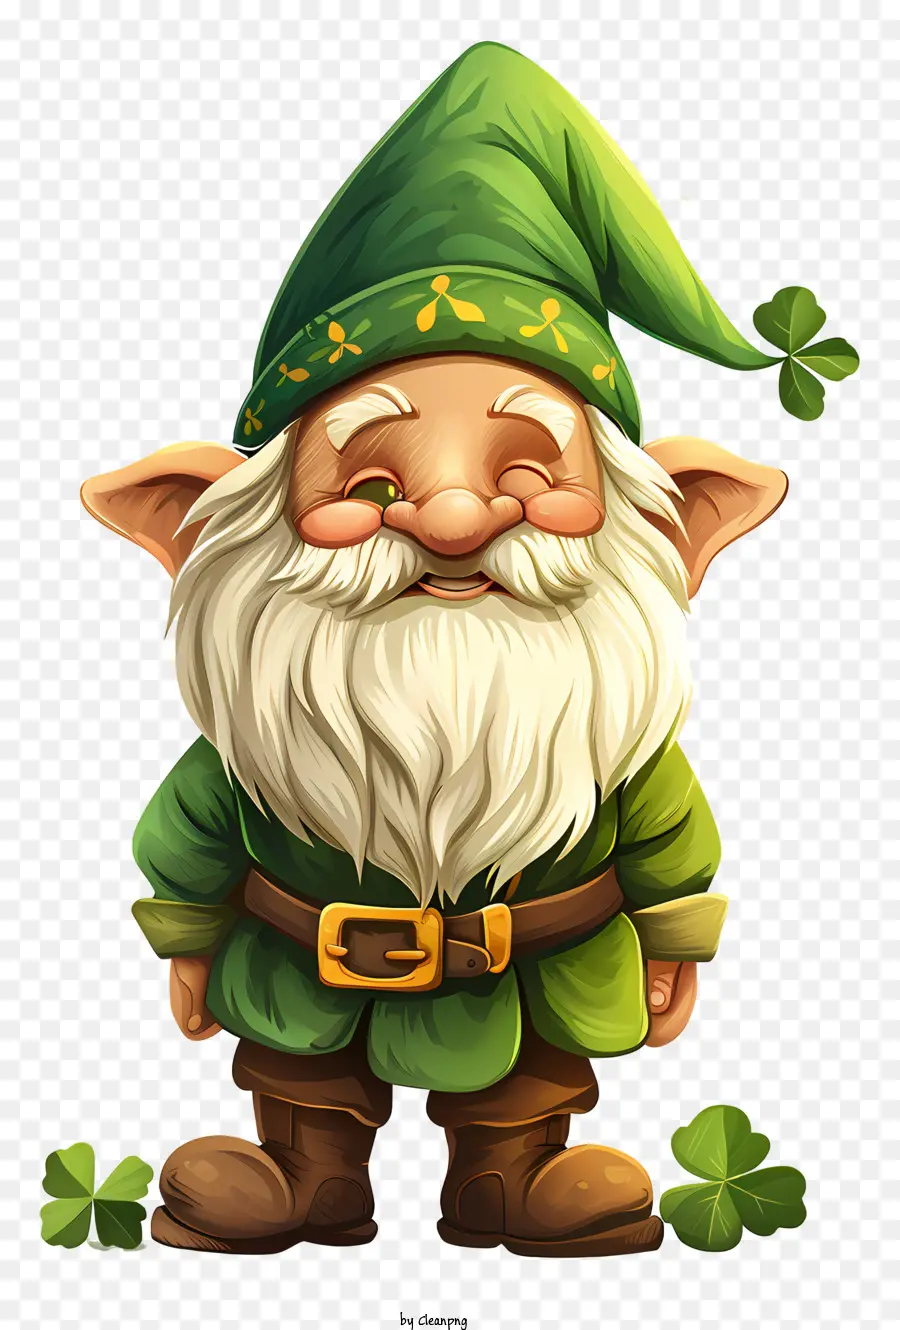 San Patrizio di Gnome Cartoon Carattena Green Outfit Beard Cappello - Personaggio dei cartoni animati con vestito verde e sorriso